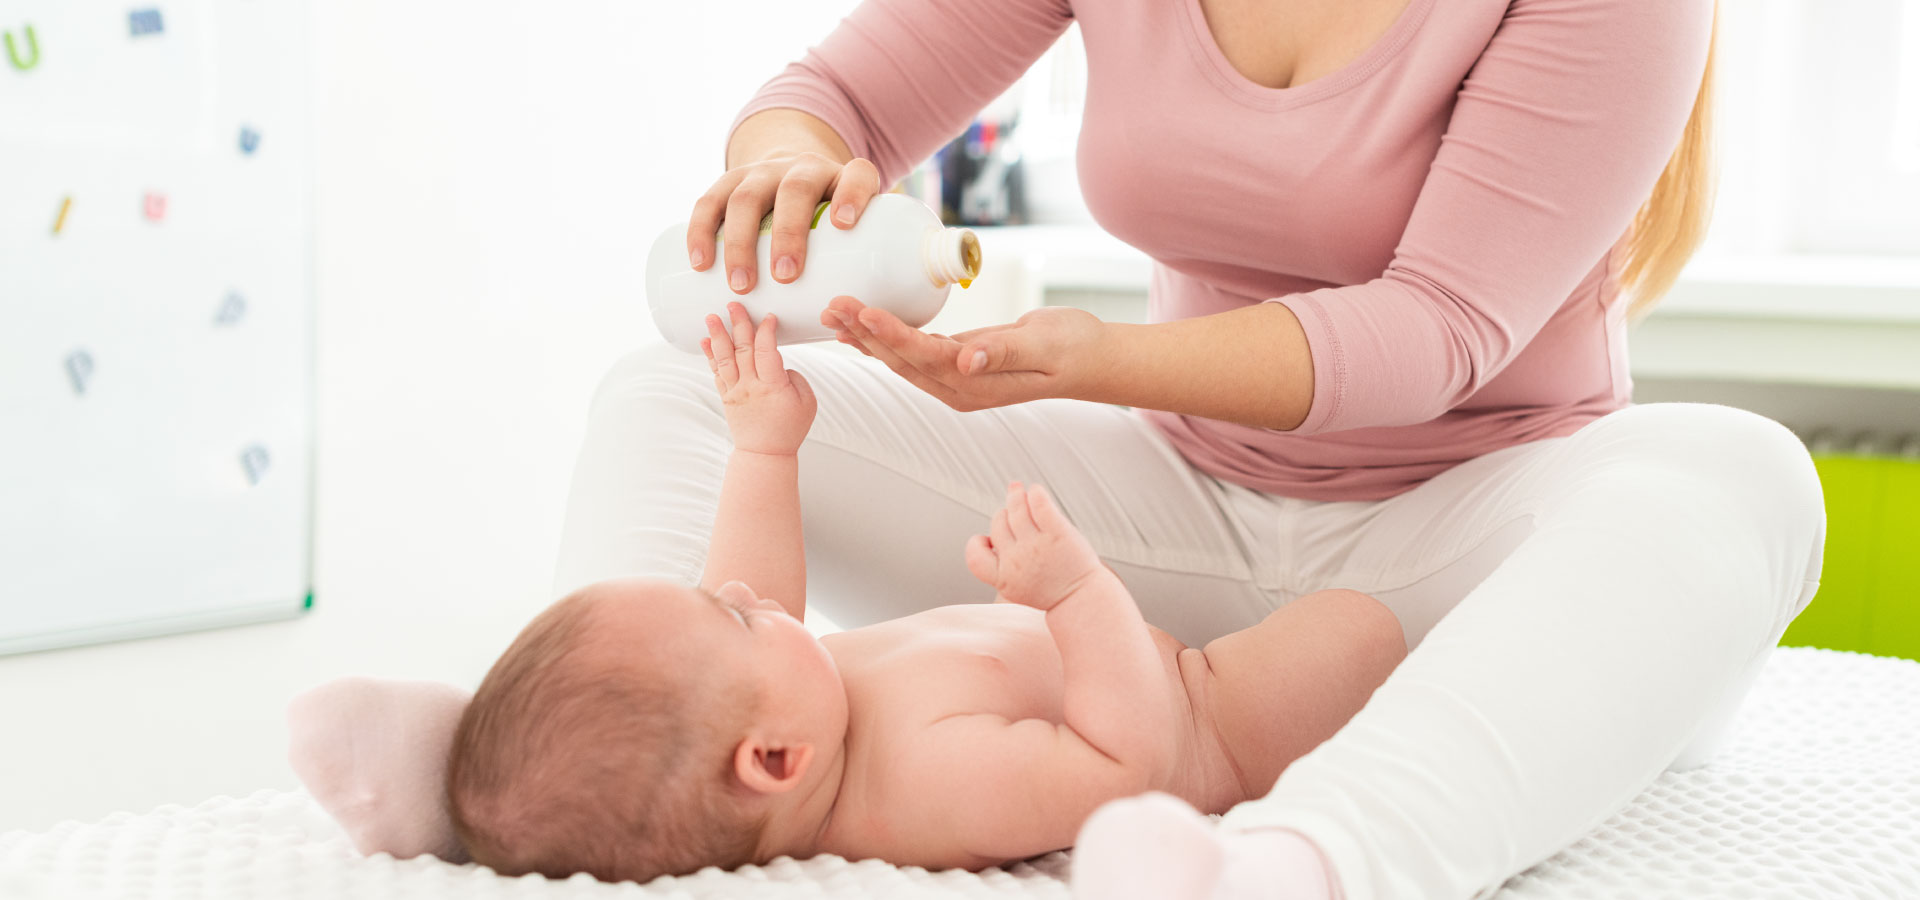 Neonata, Scopri tutti i prodotti per neonata